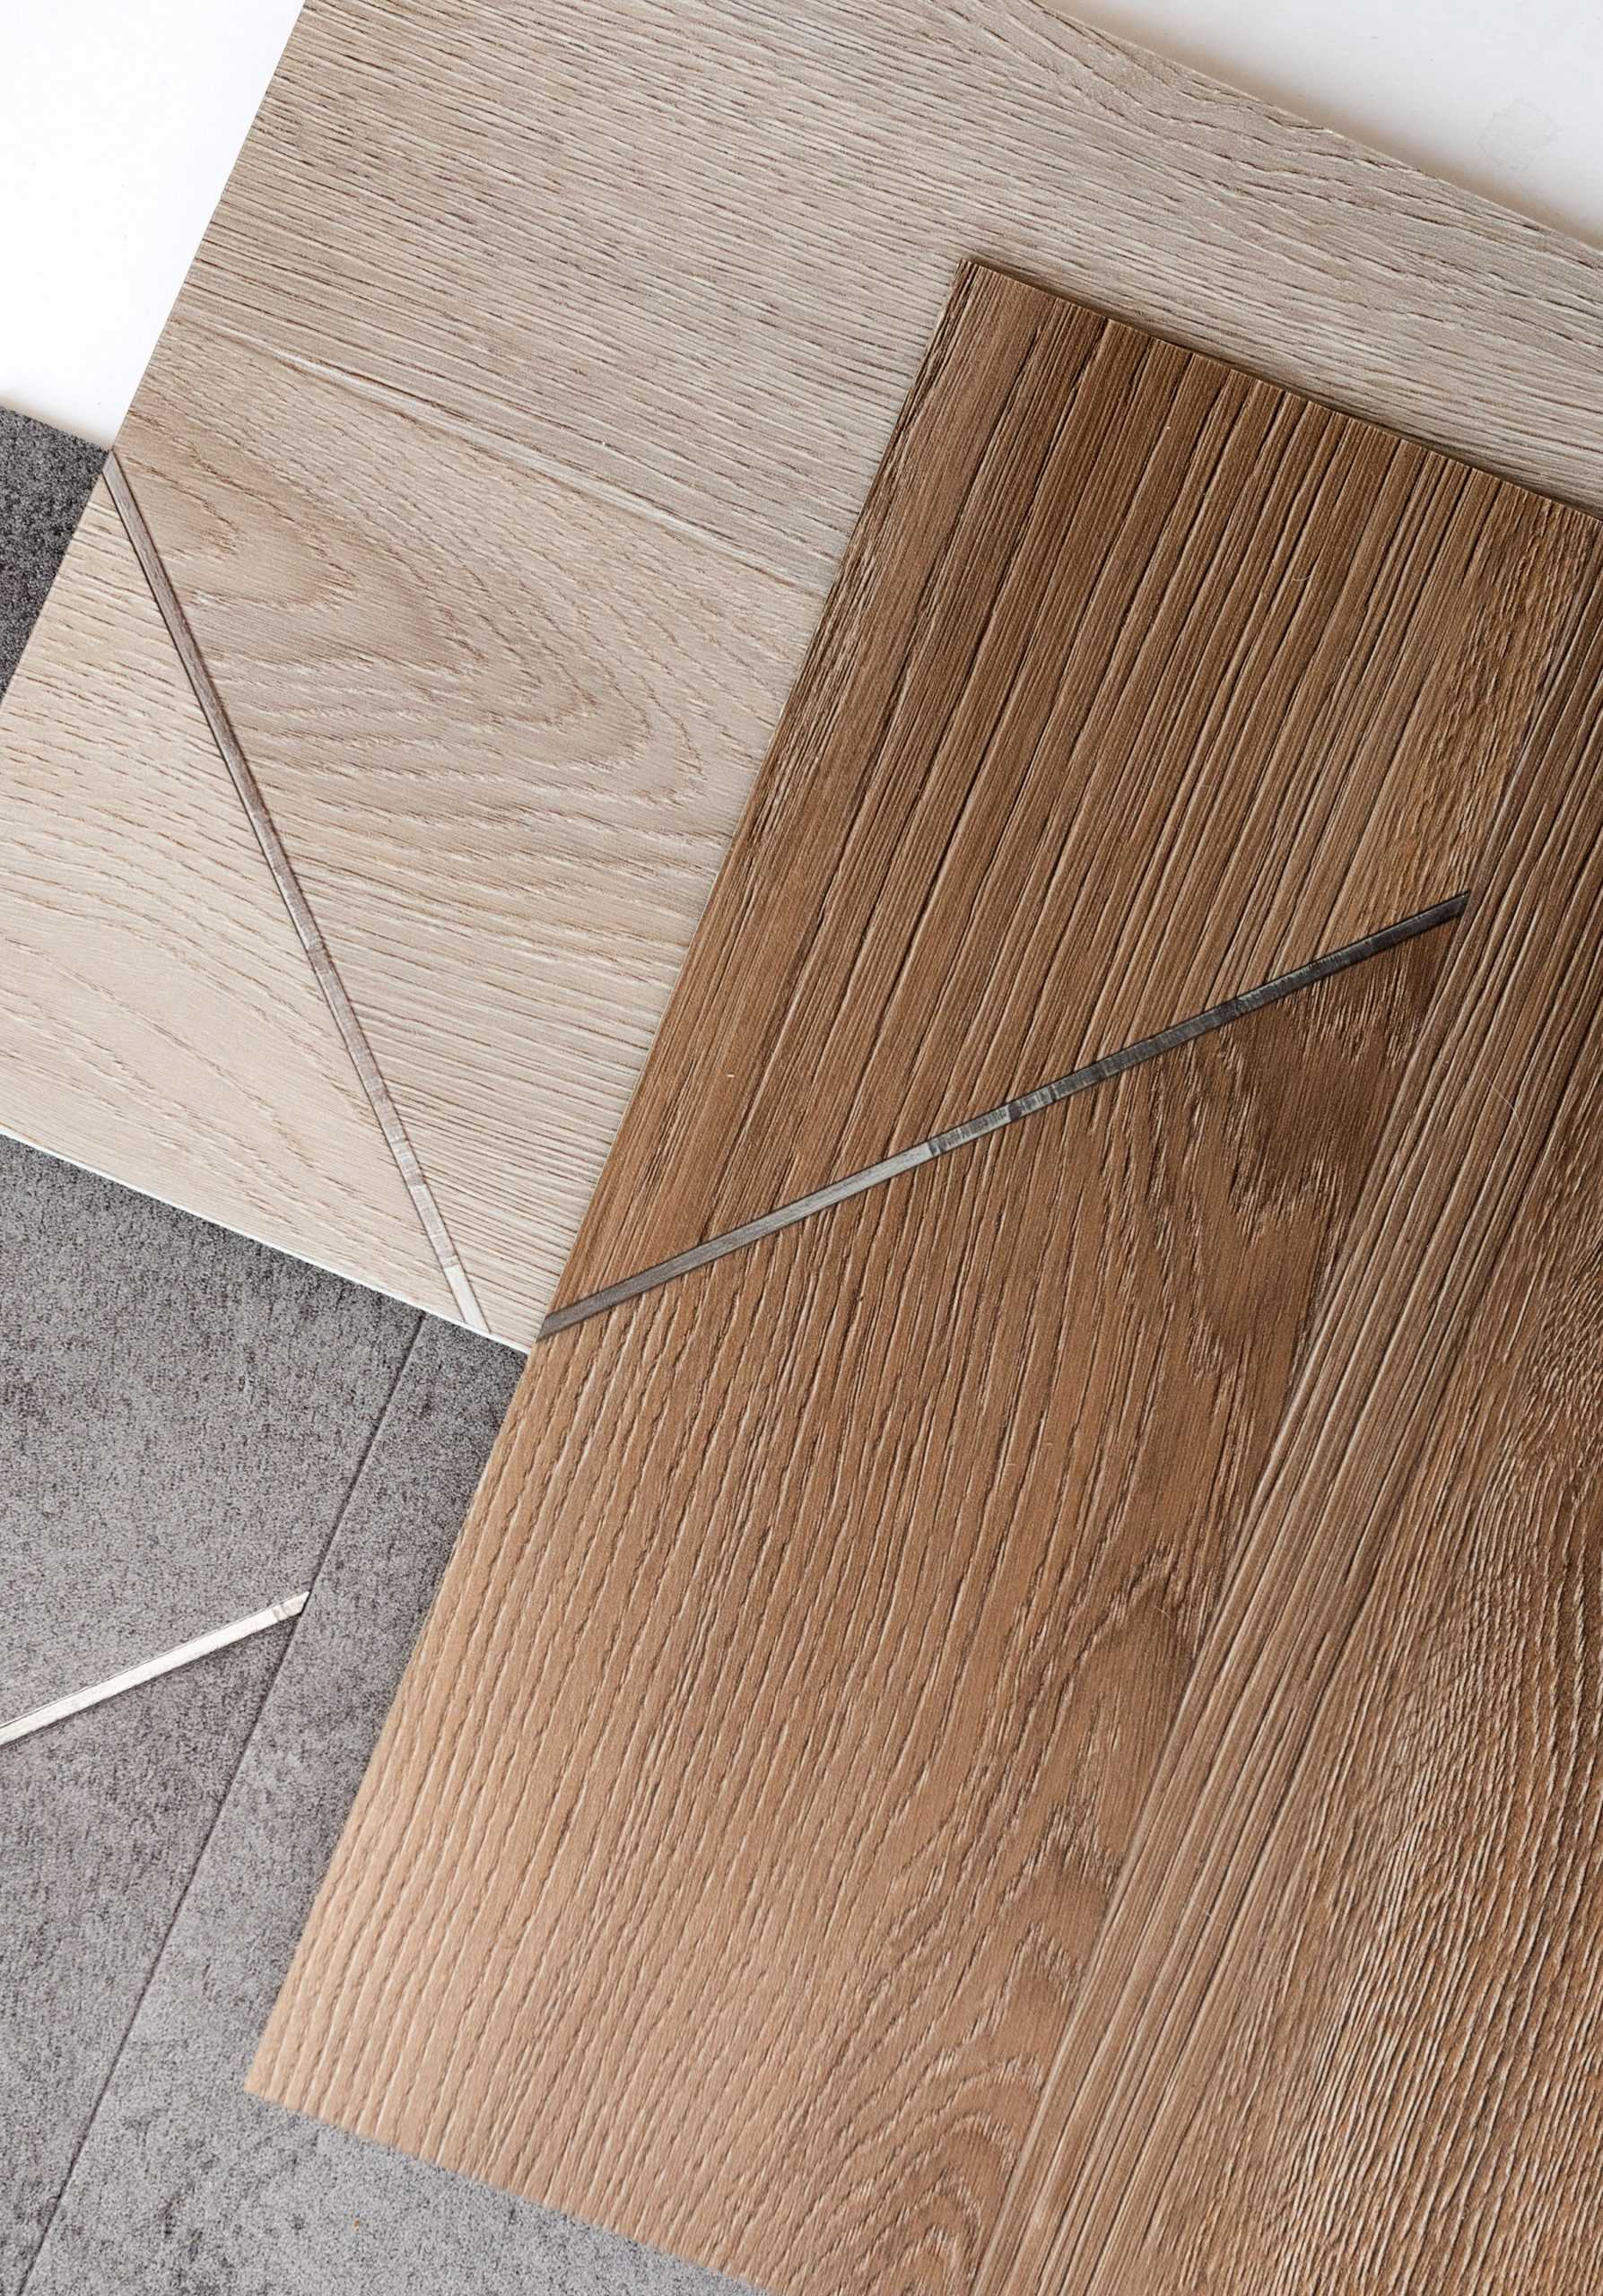 Patcraft的Inset地板系列类似于木材和混凝土